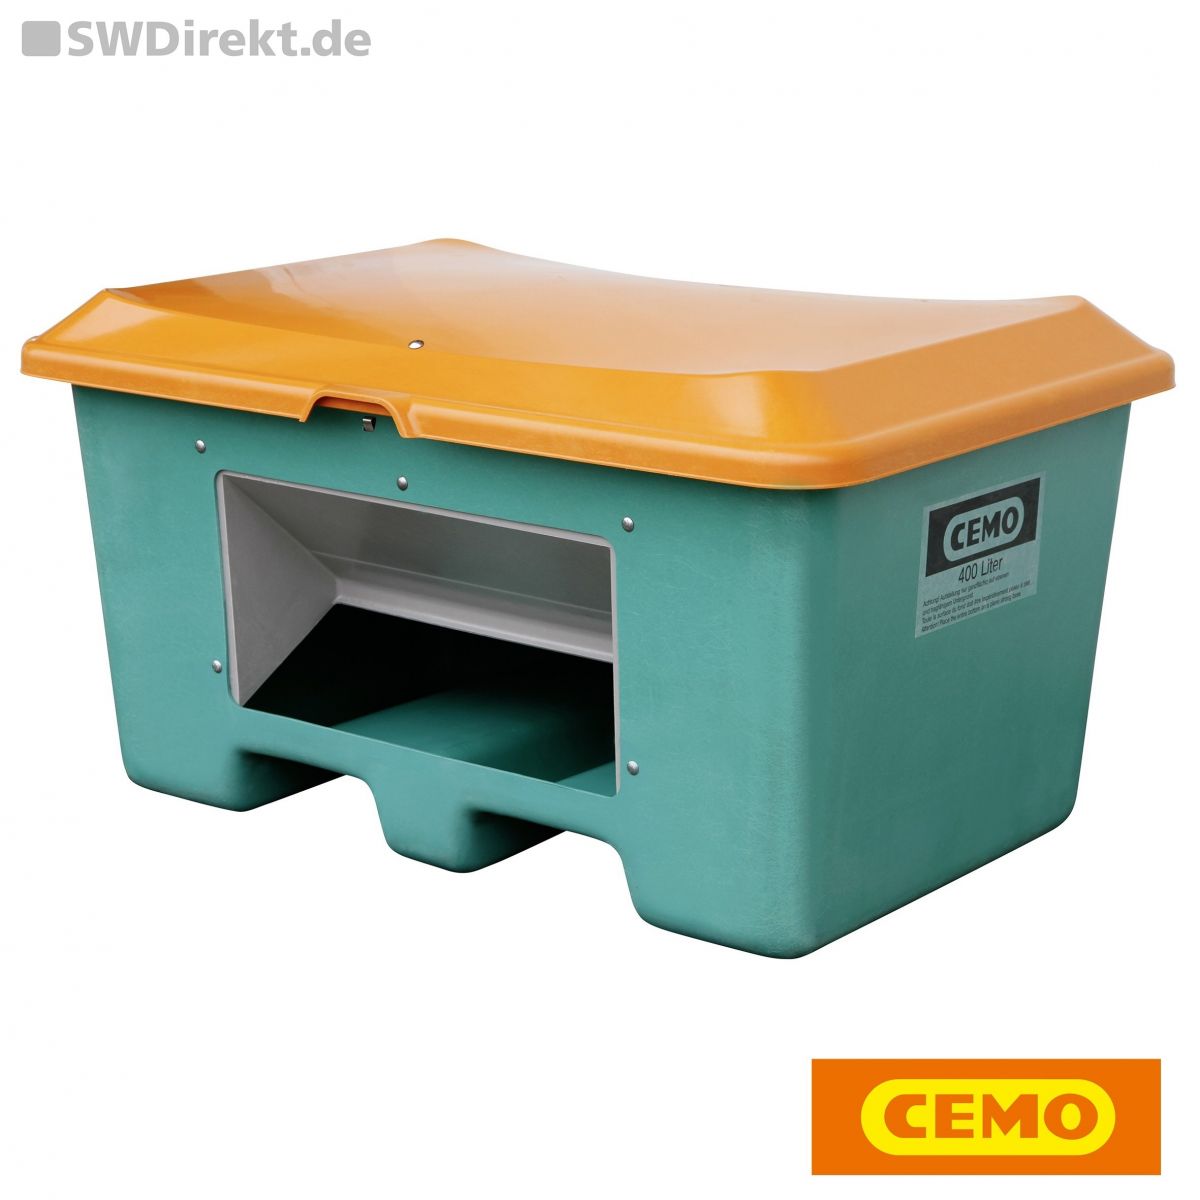 CEMO Streugutbehälter Plus 3 grün für 400 l mit Entnahmeöffnung, unterfahrbar